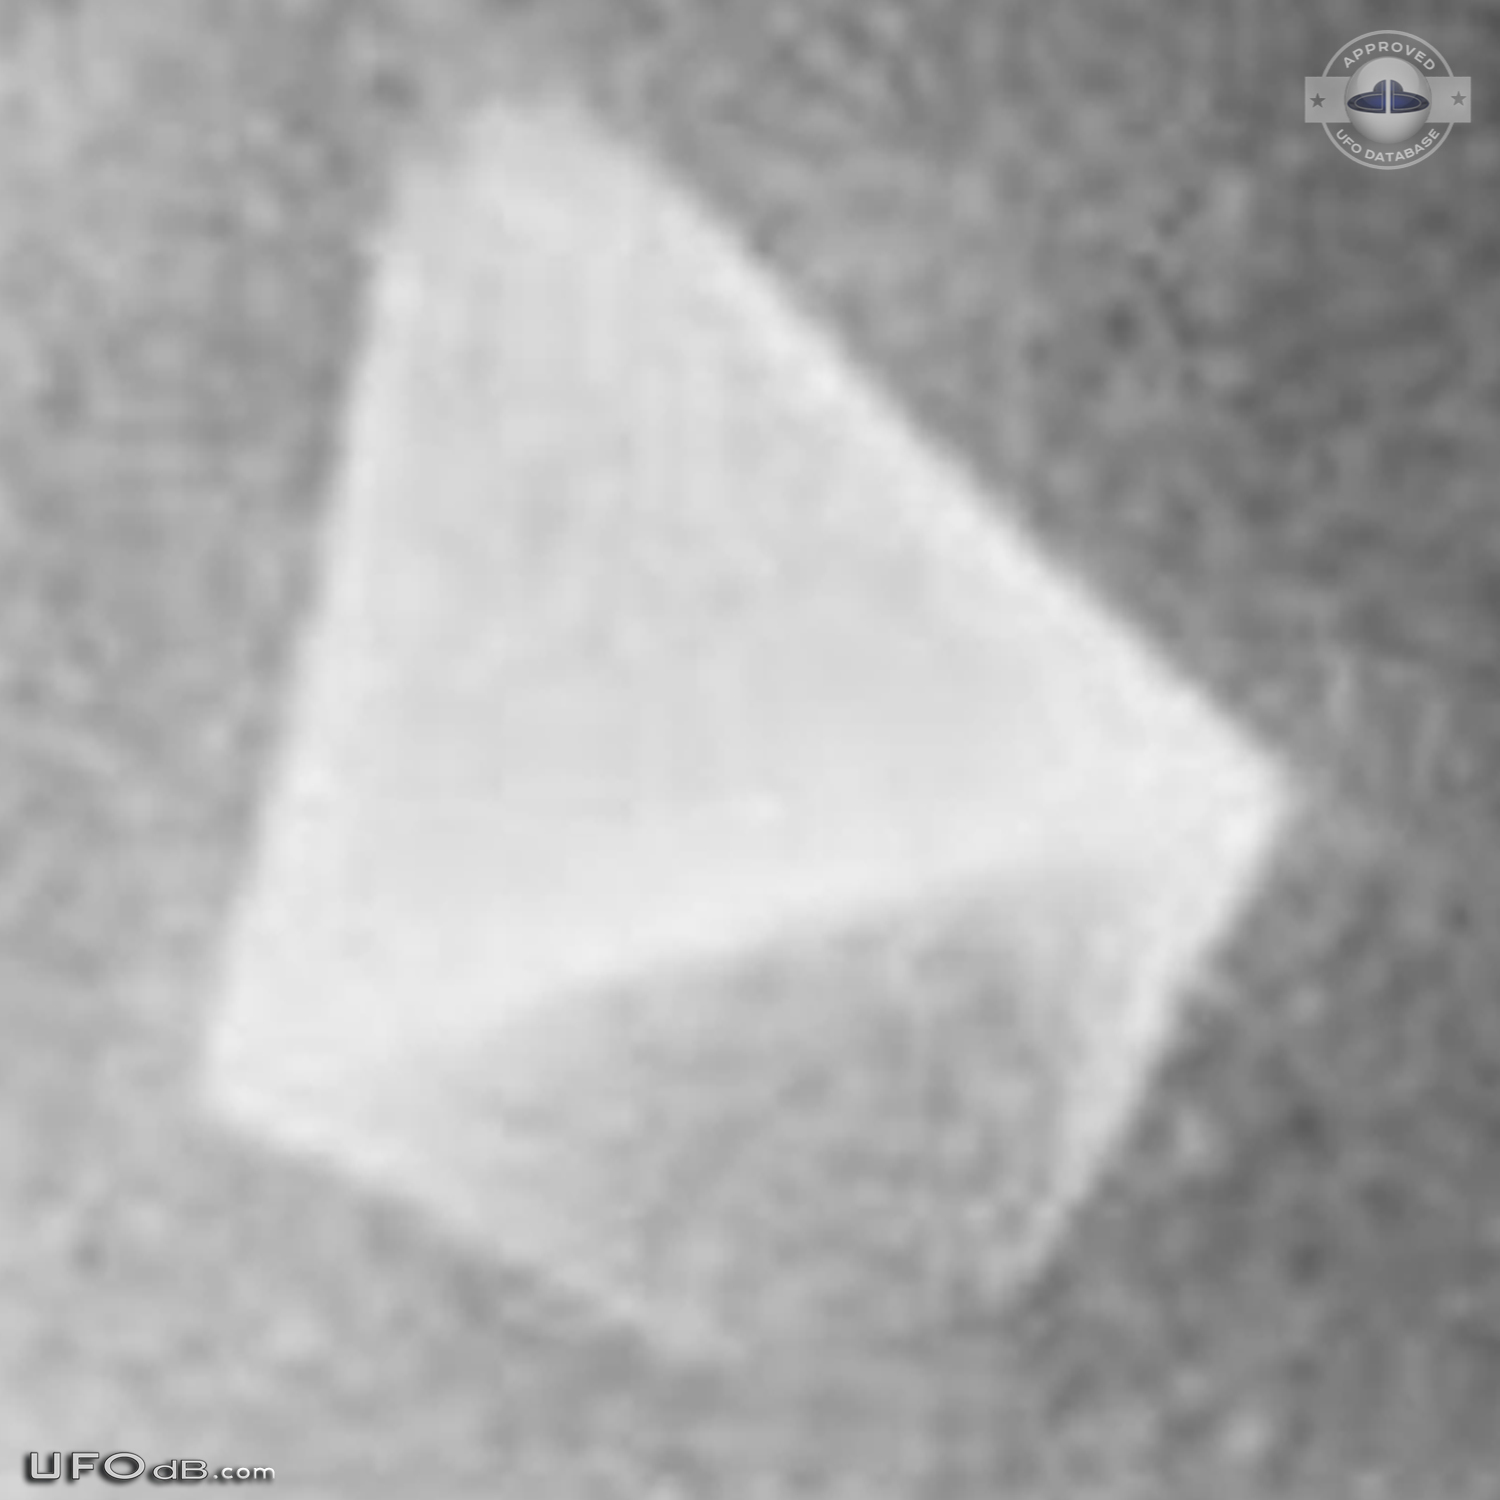 CIA Declassified UFO picture of 1968 in Maimi, Florida USA UFO Picture #630-5